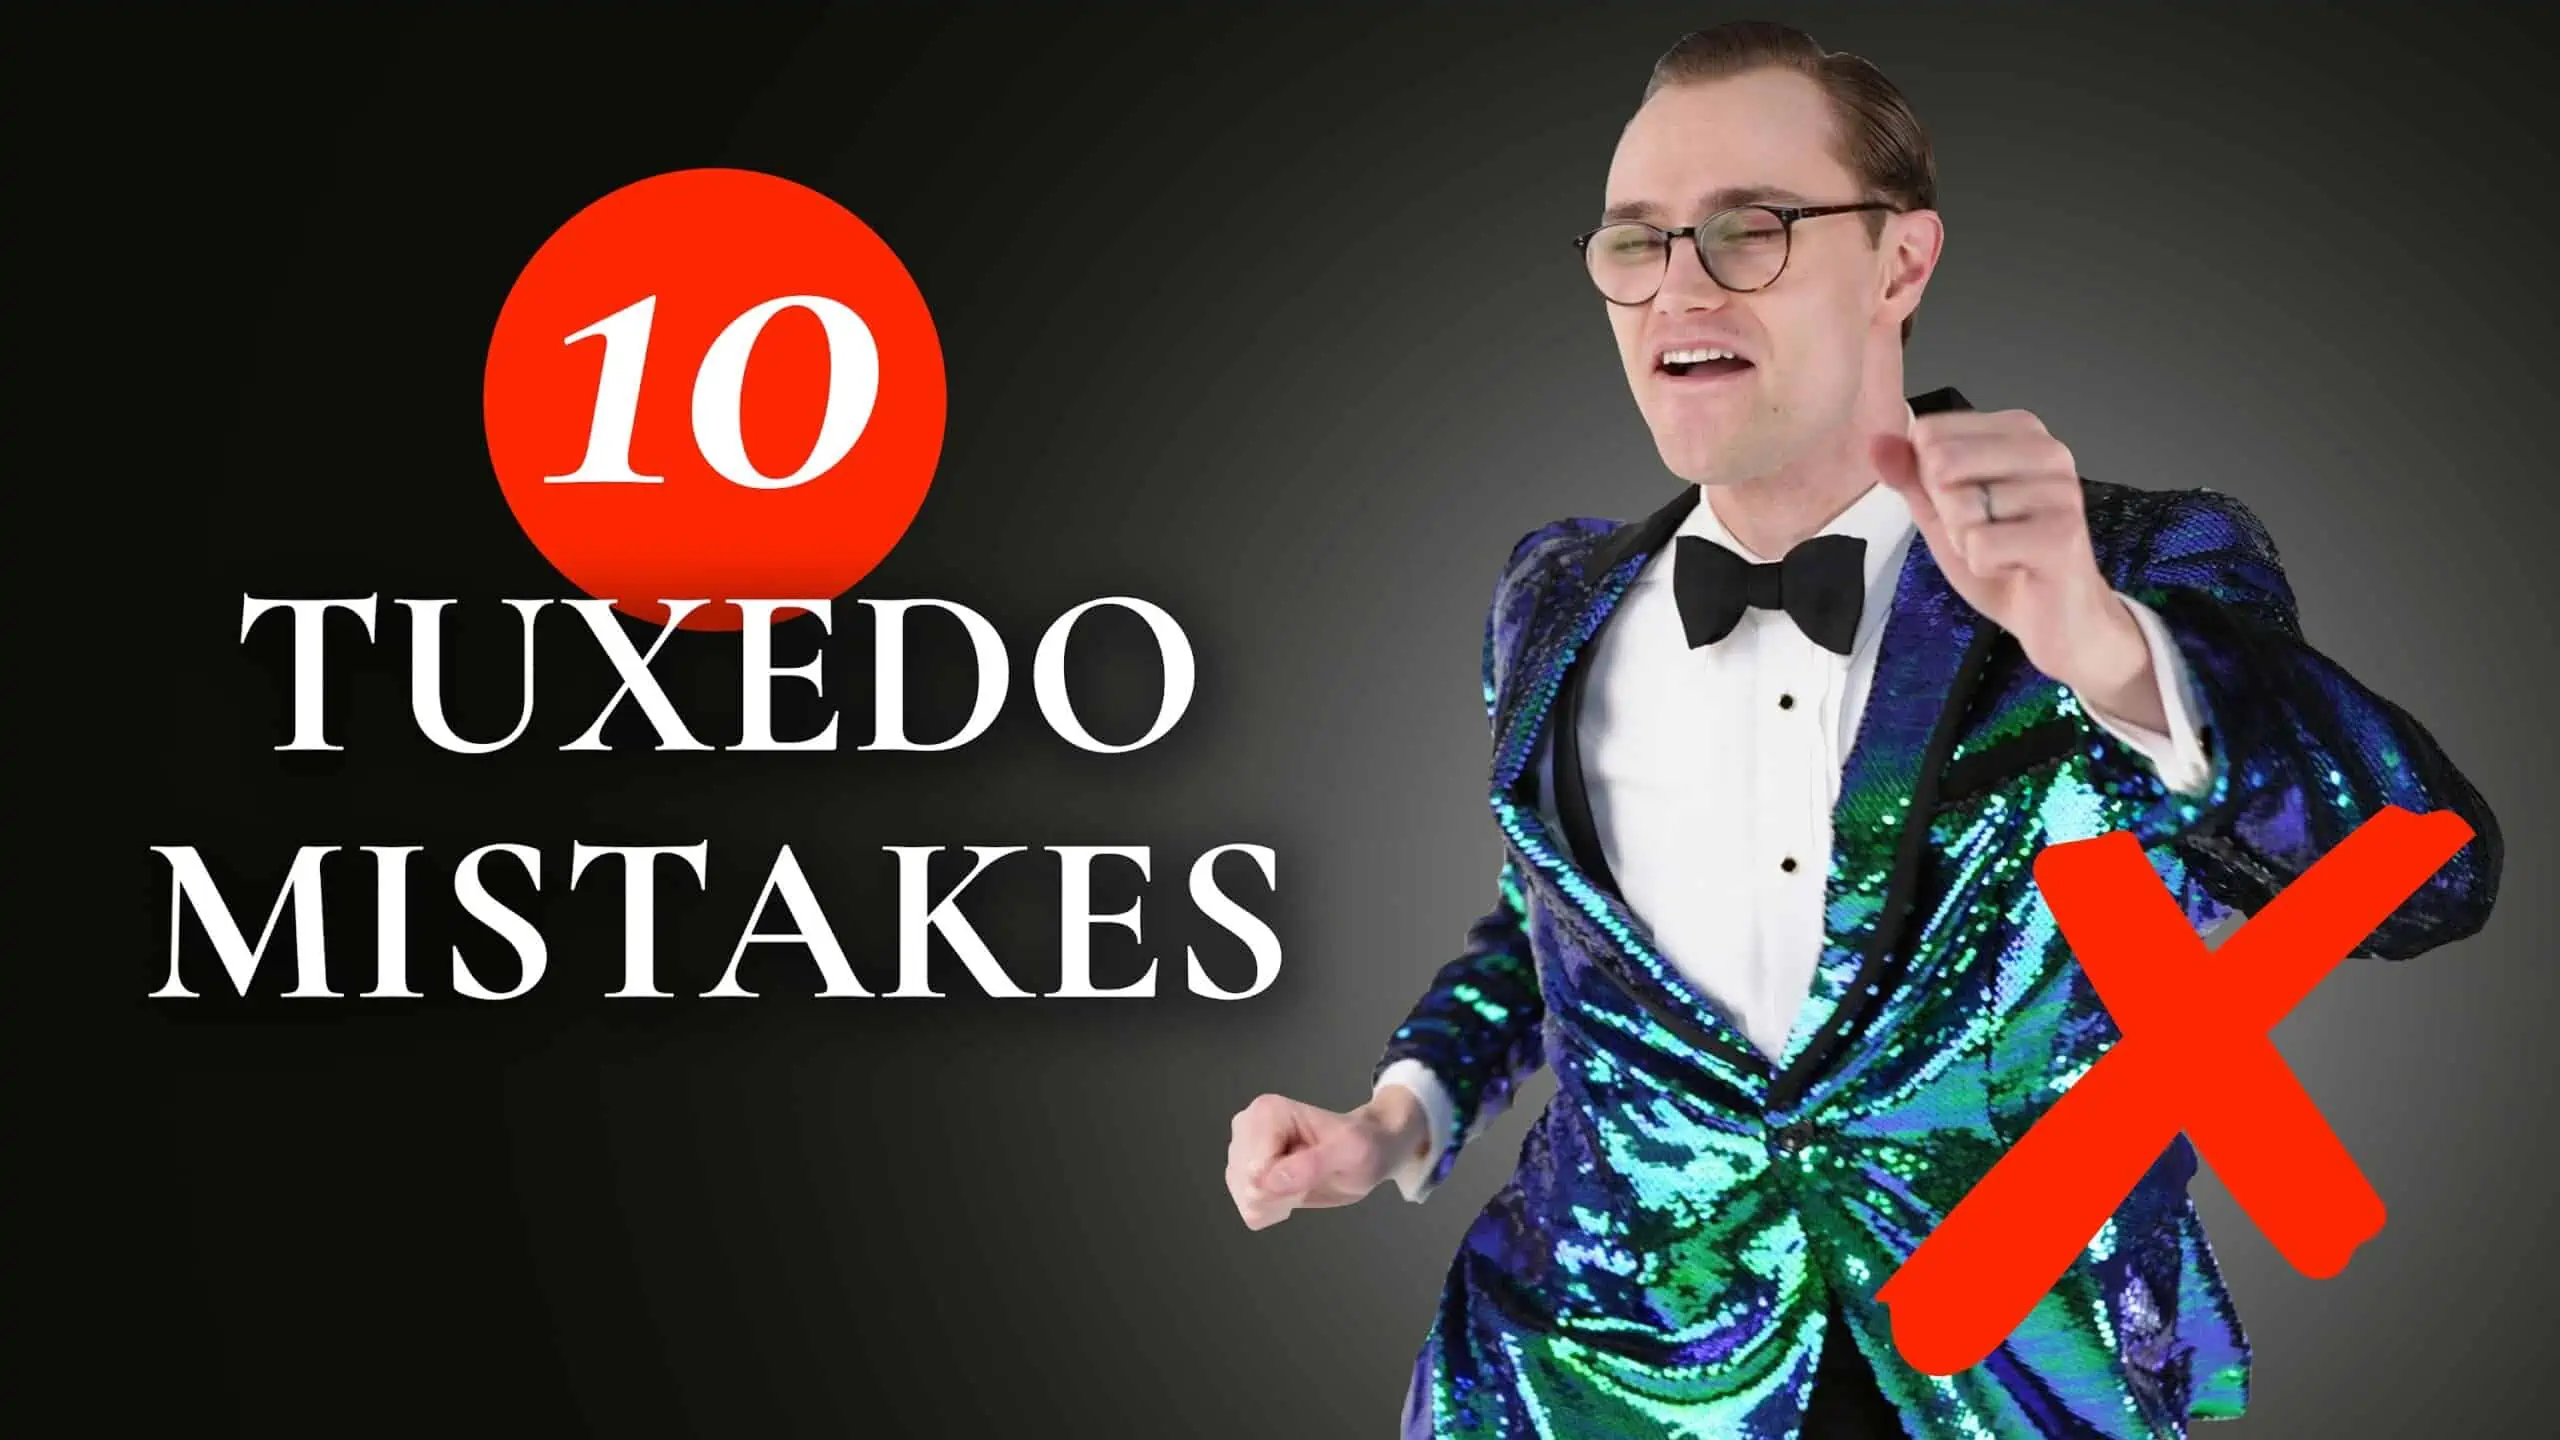 10 tuxedo mistakes 3840x2160 scaled